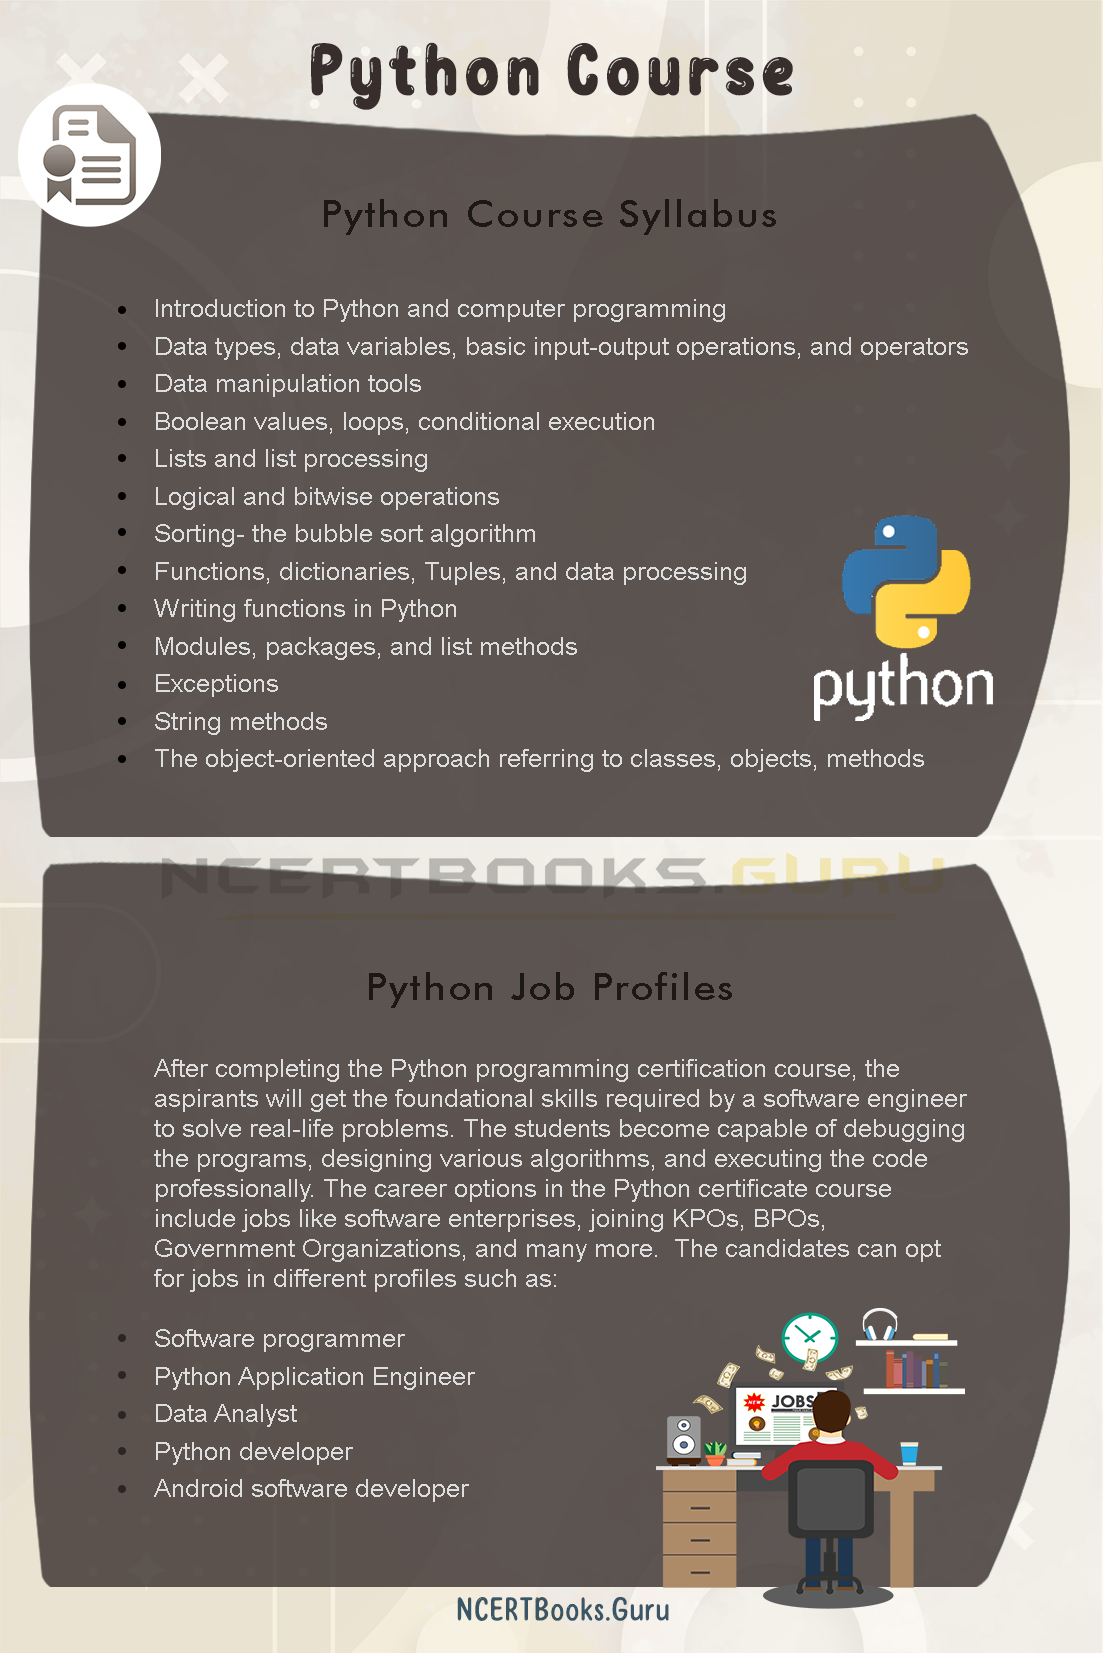 Python Course Details 2